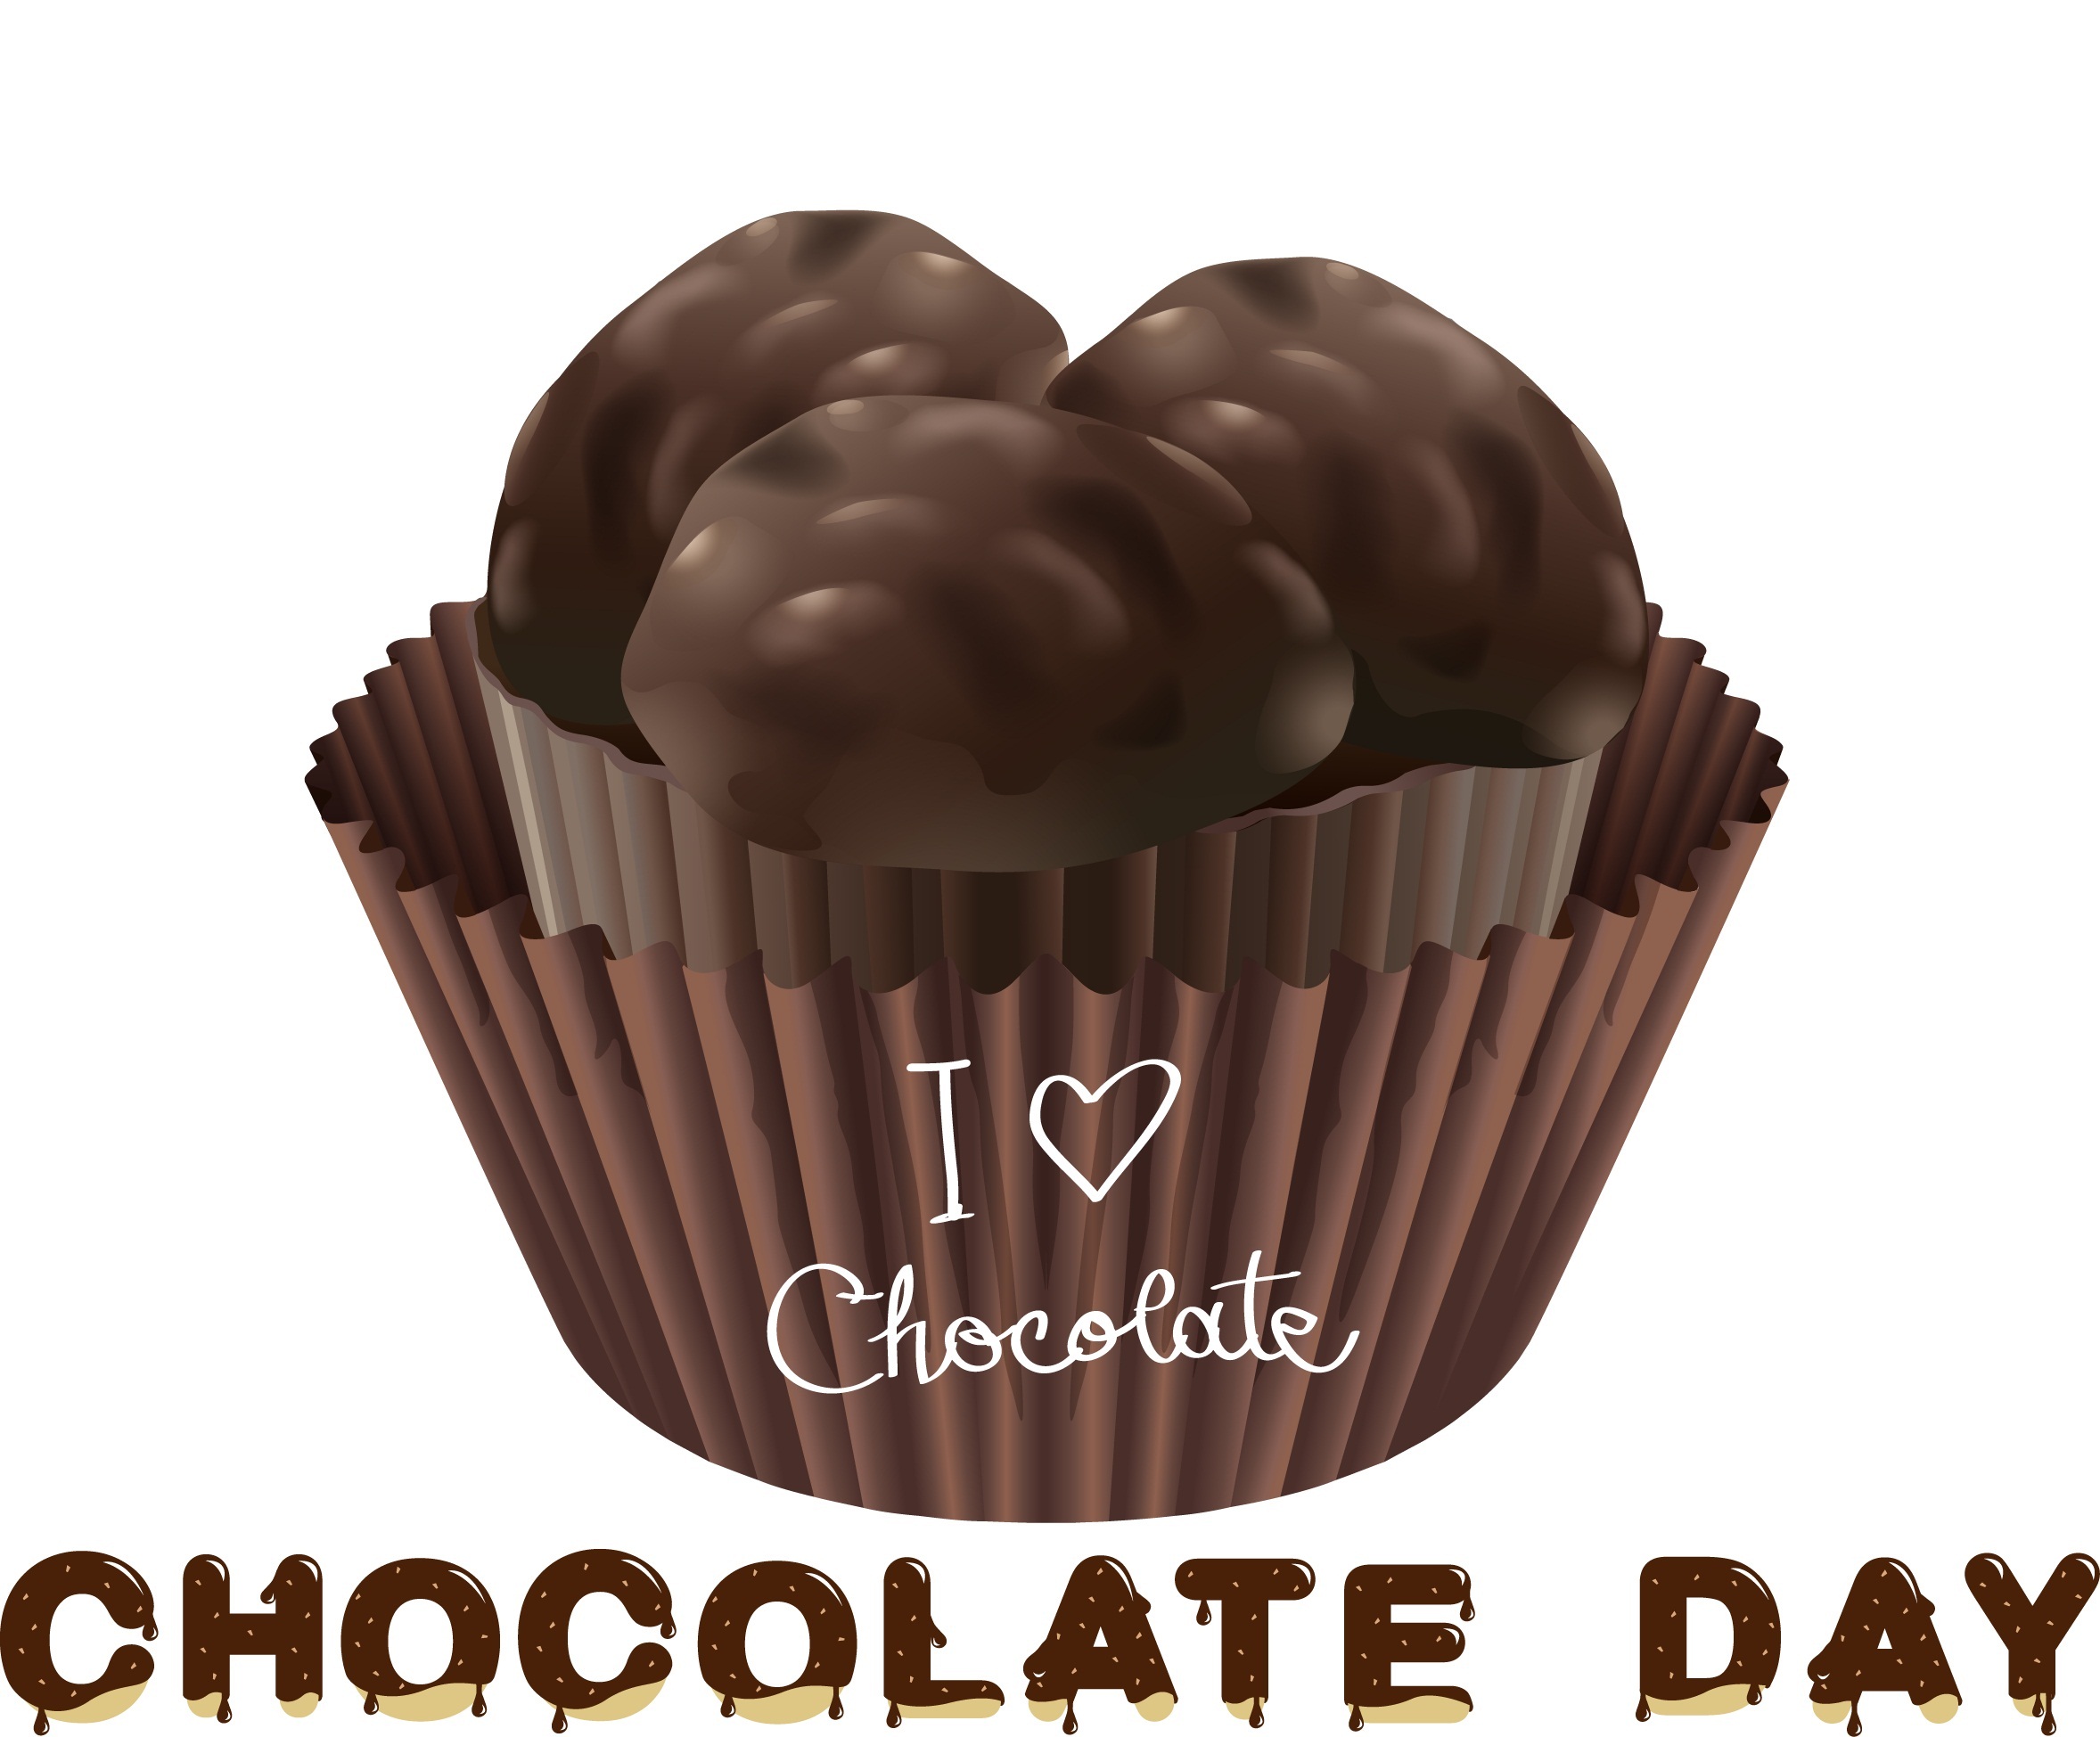 Happy Chocolate Day 2018 Wishes, SMS, Images इनकी मदद से रिश्तों में घोलें मिठास 